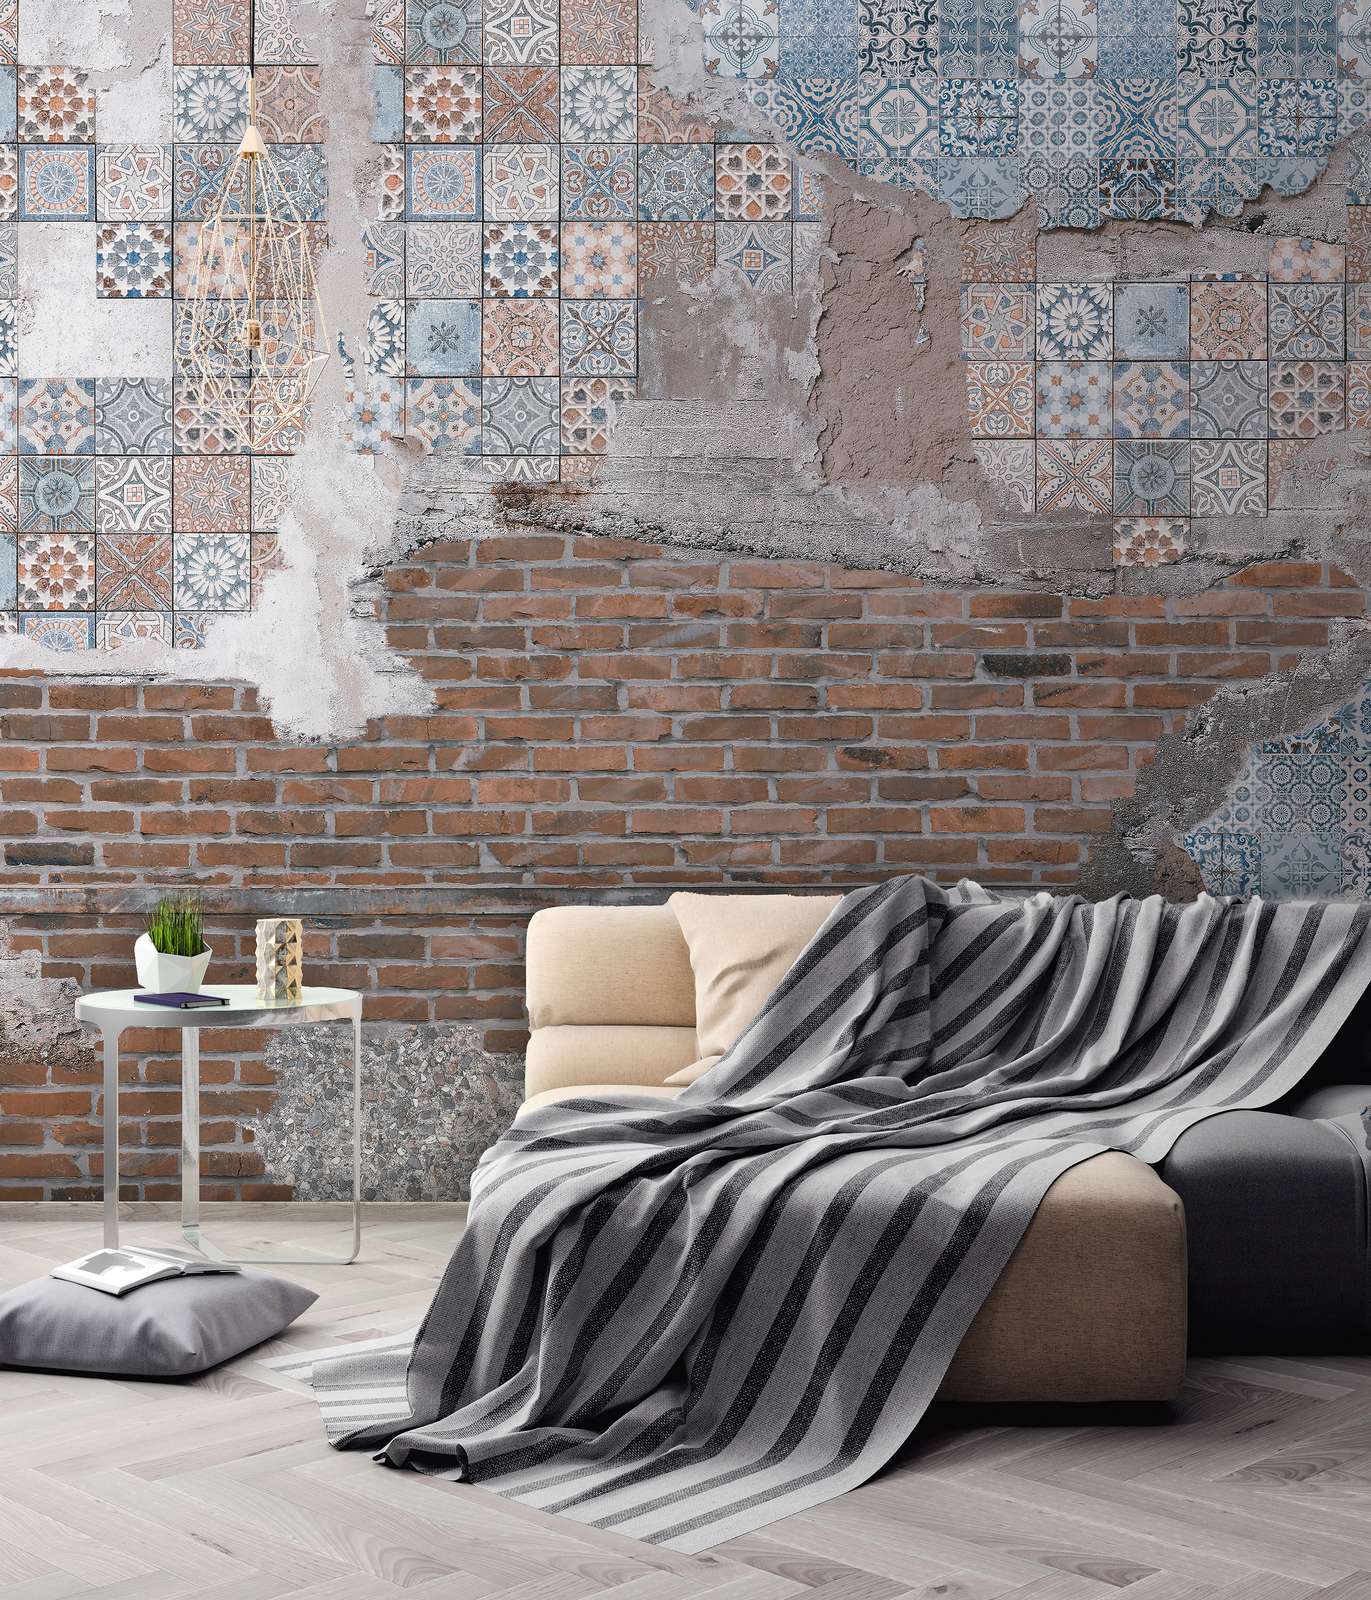             Fotomurali Muro di mattoni con pietre di mosaico intonacate - Marrone, blu, grigio
        